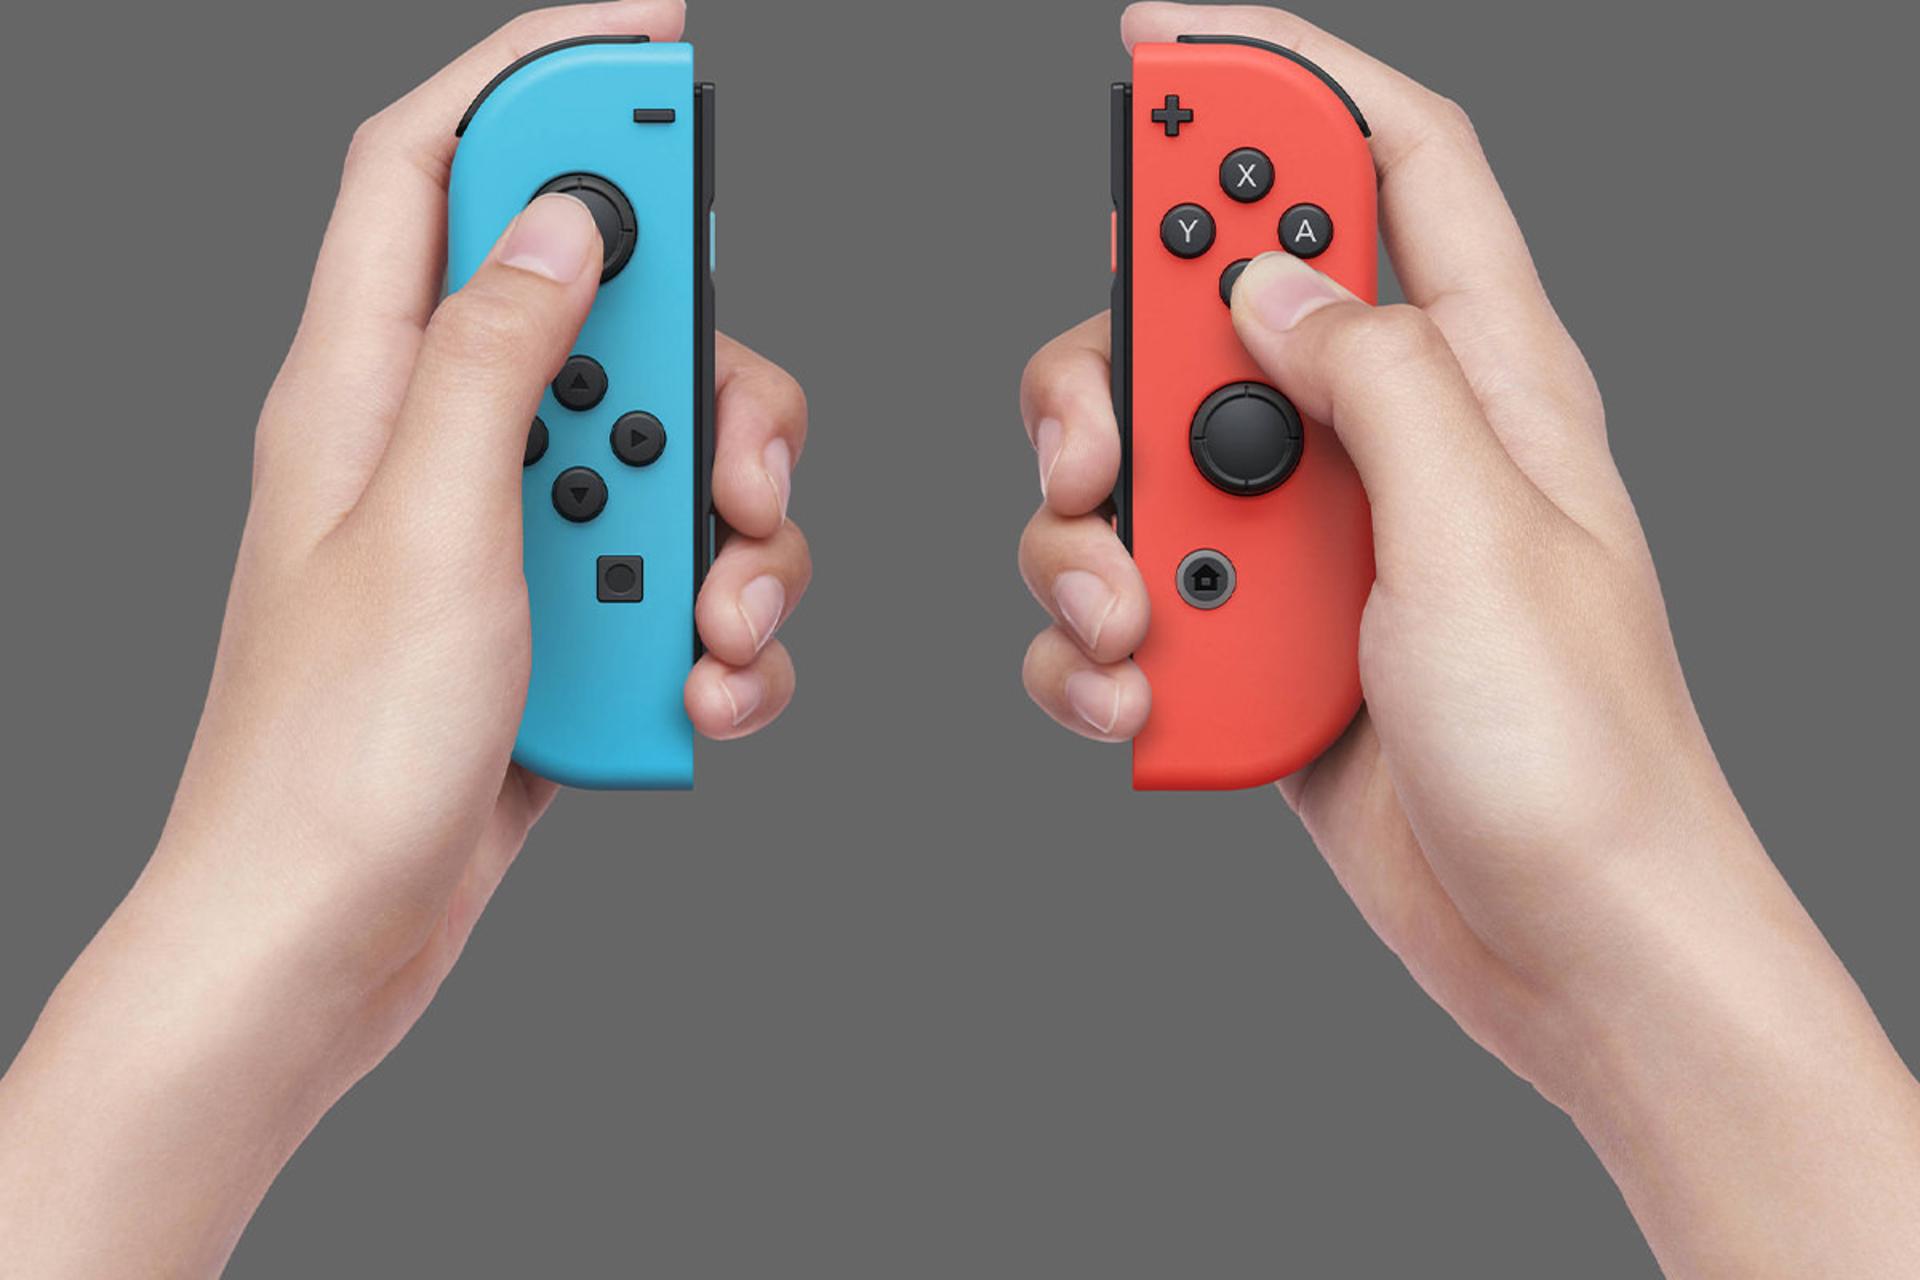 مرجع متخصصين ايران جويكان هاي نينتندو سوييچ نماي جلو به صورت جدا از هم و در دو دست / Nintendo Switch